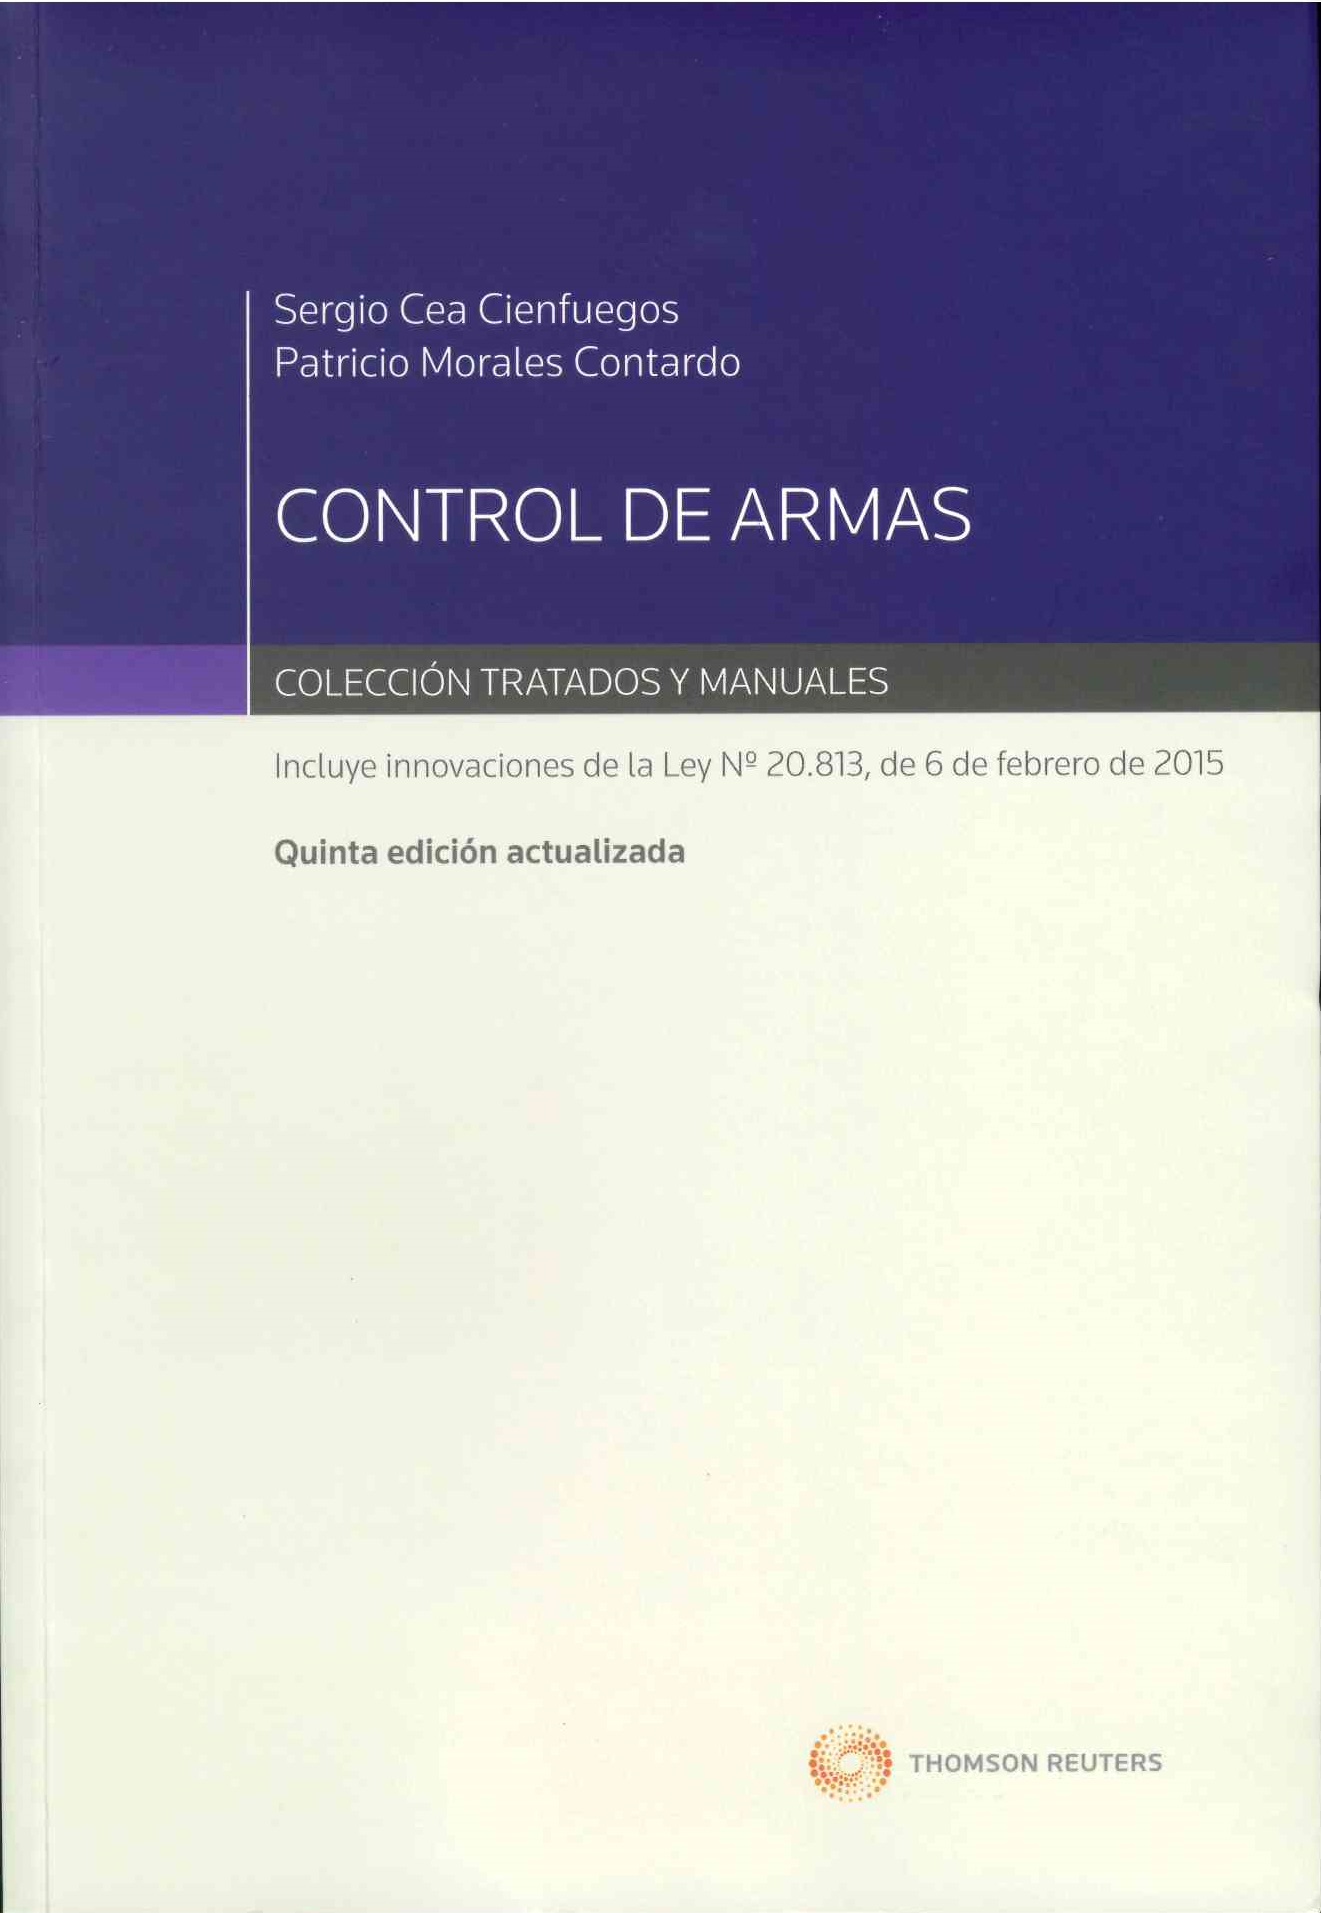 Control de armas. Incluye innovaciones de la ley N°20.813 de 6 de febrero 2015